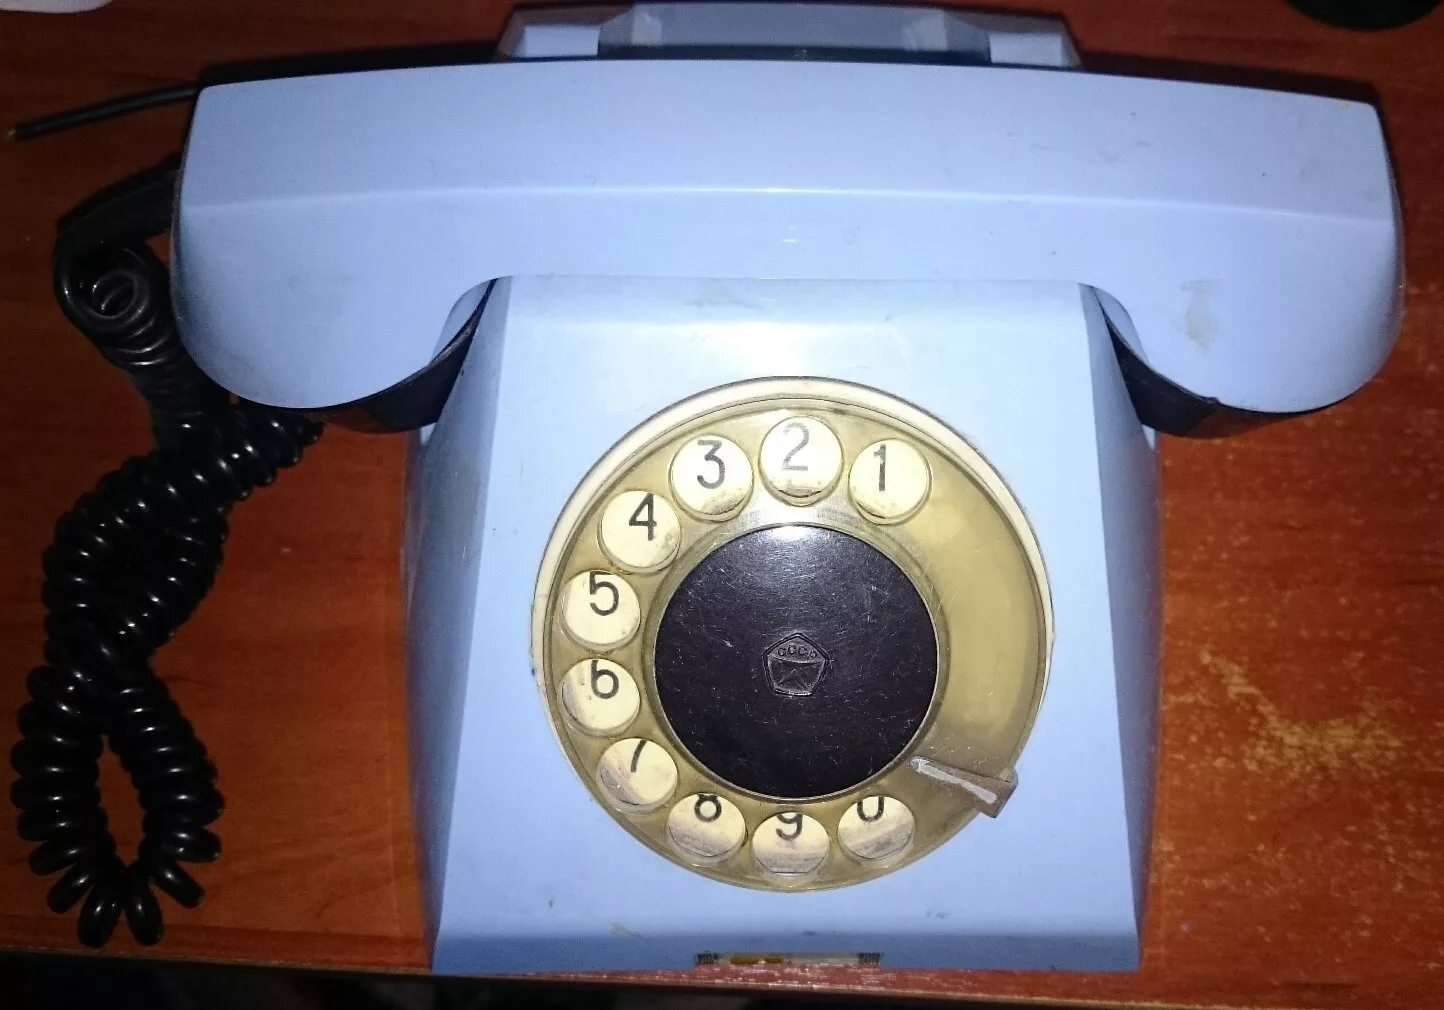 Т57 телефонный аппарат. Телефонный аппарат Строуджера с дисковым номеронабирателем 1899. Телефонный аппарат та-68 с дисковым номеронабирателем. Номеронабиратель дисковый НР-5. Телефонный аппарат с дисковым номеронабирателем Телта спектр-308.